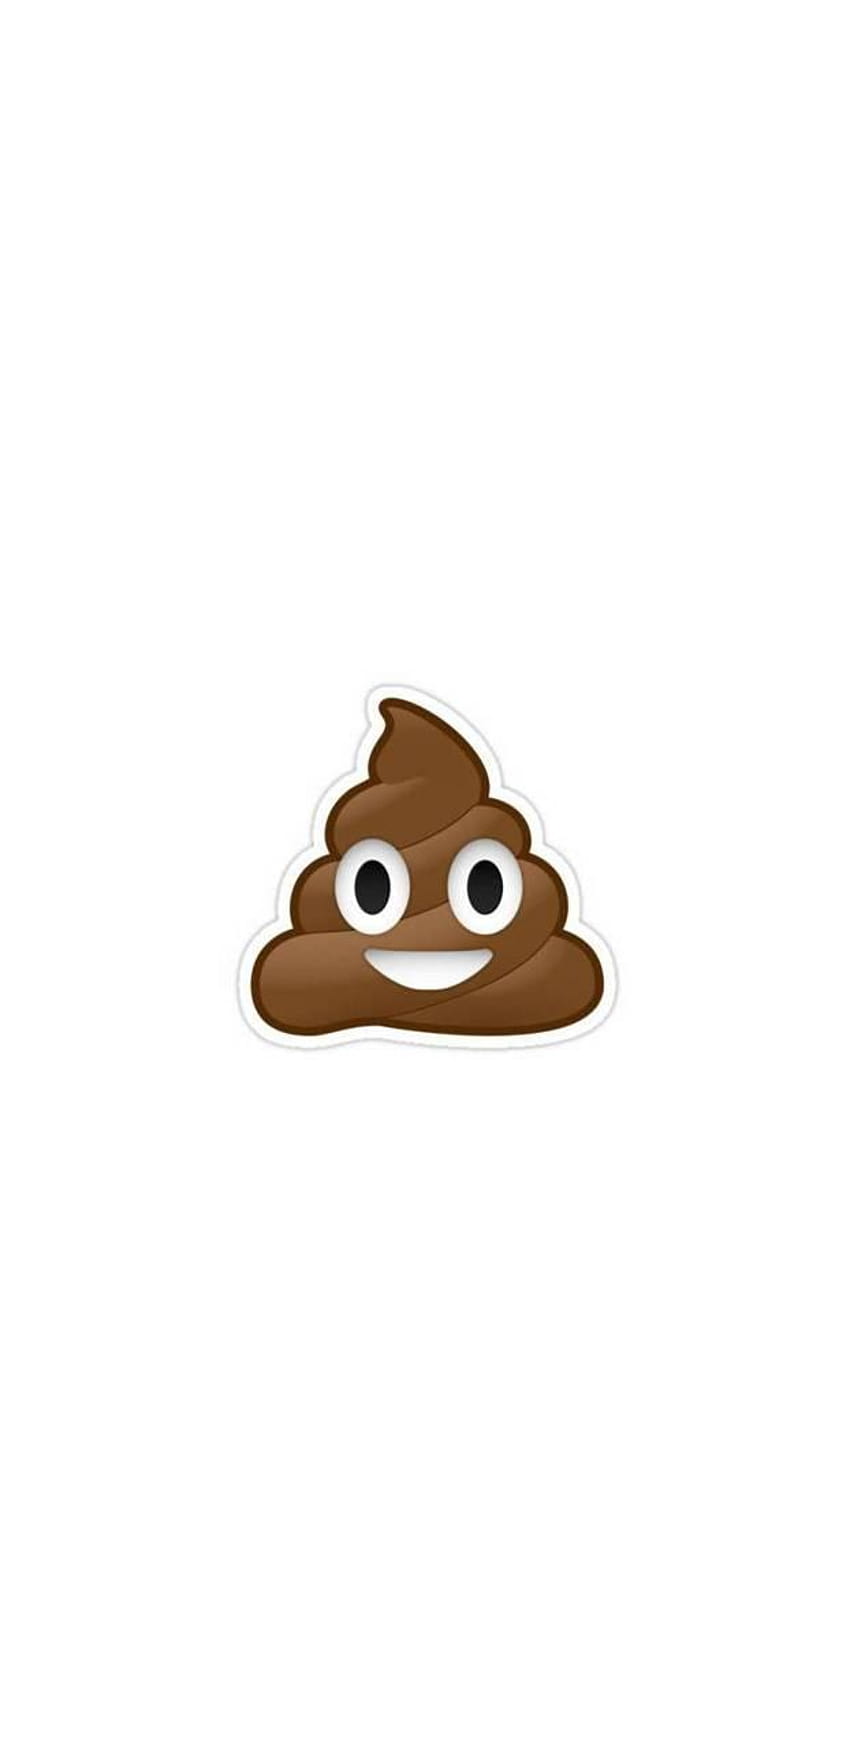 Poop by MatthewSmith33, poop emoji phone HD phone wallpaper